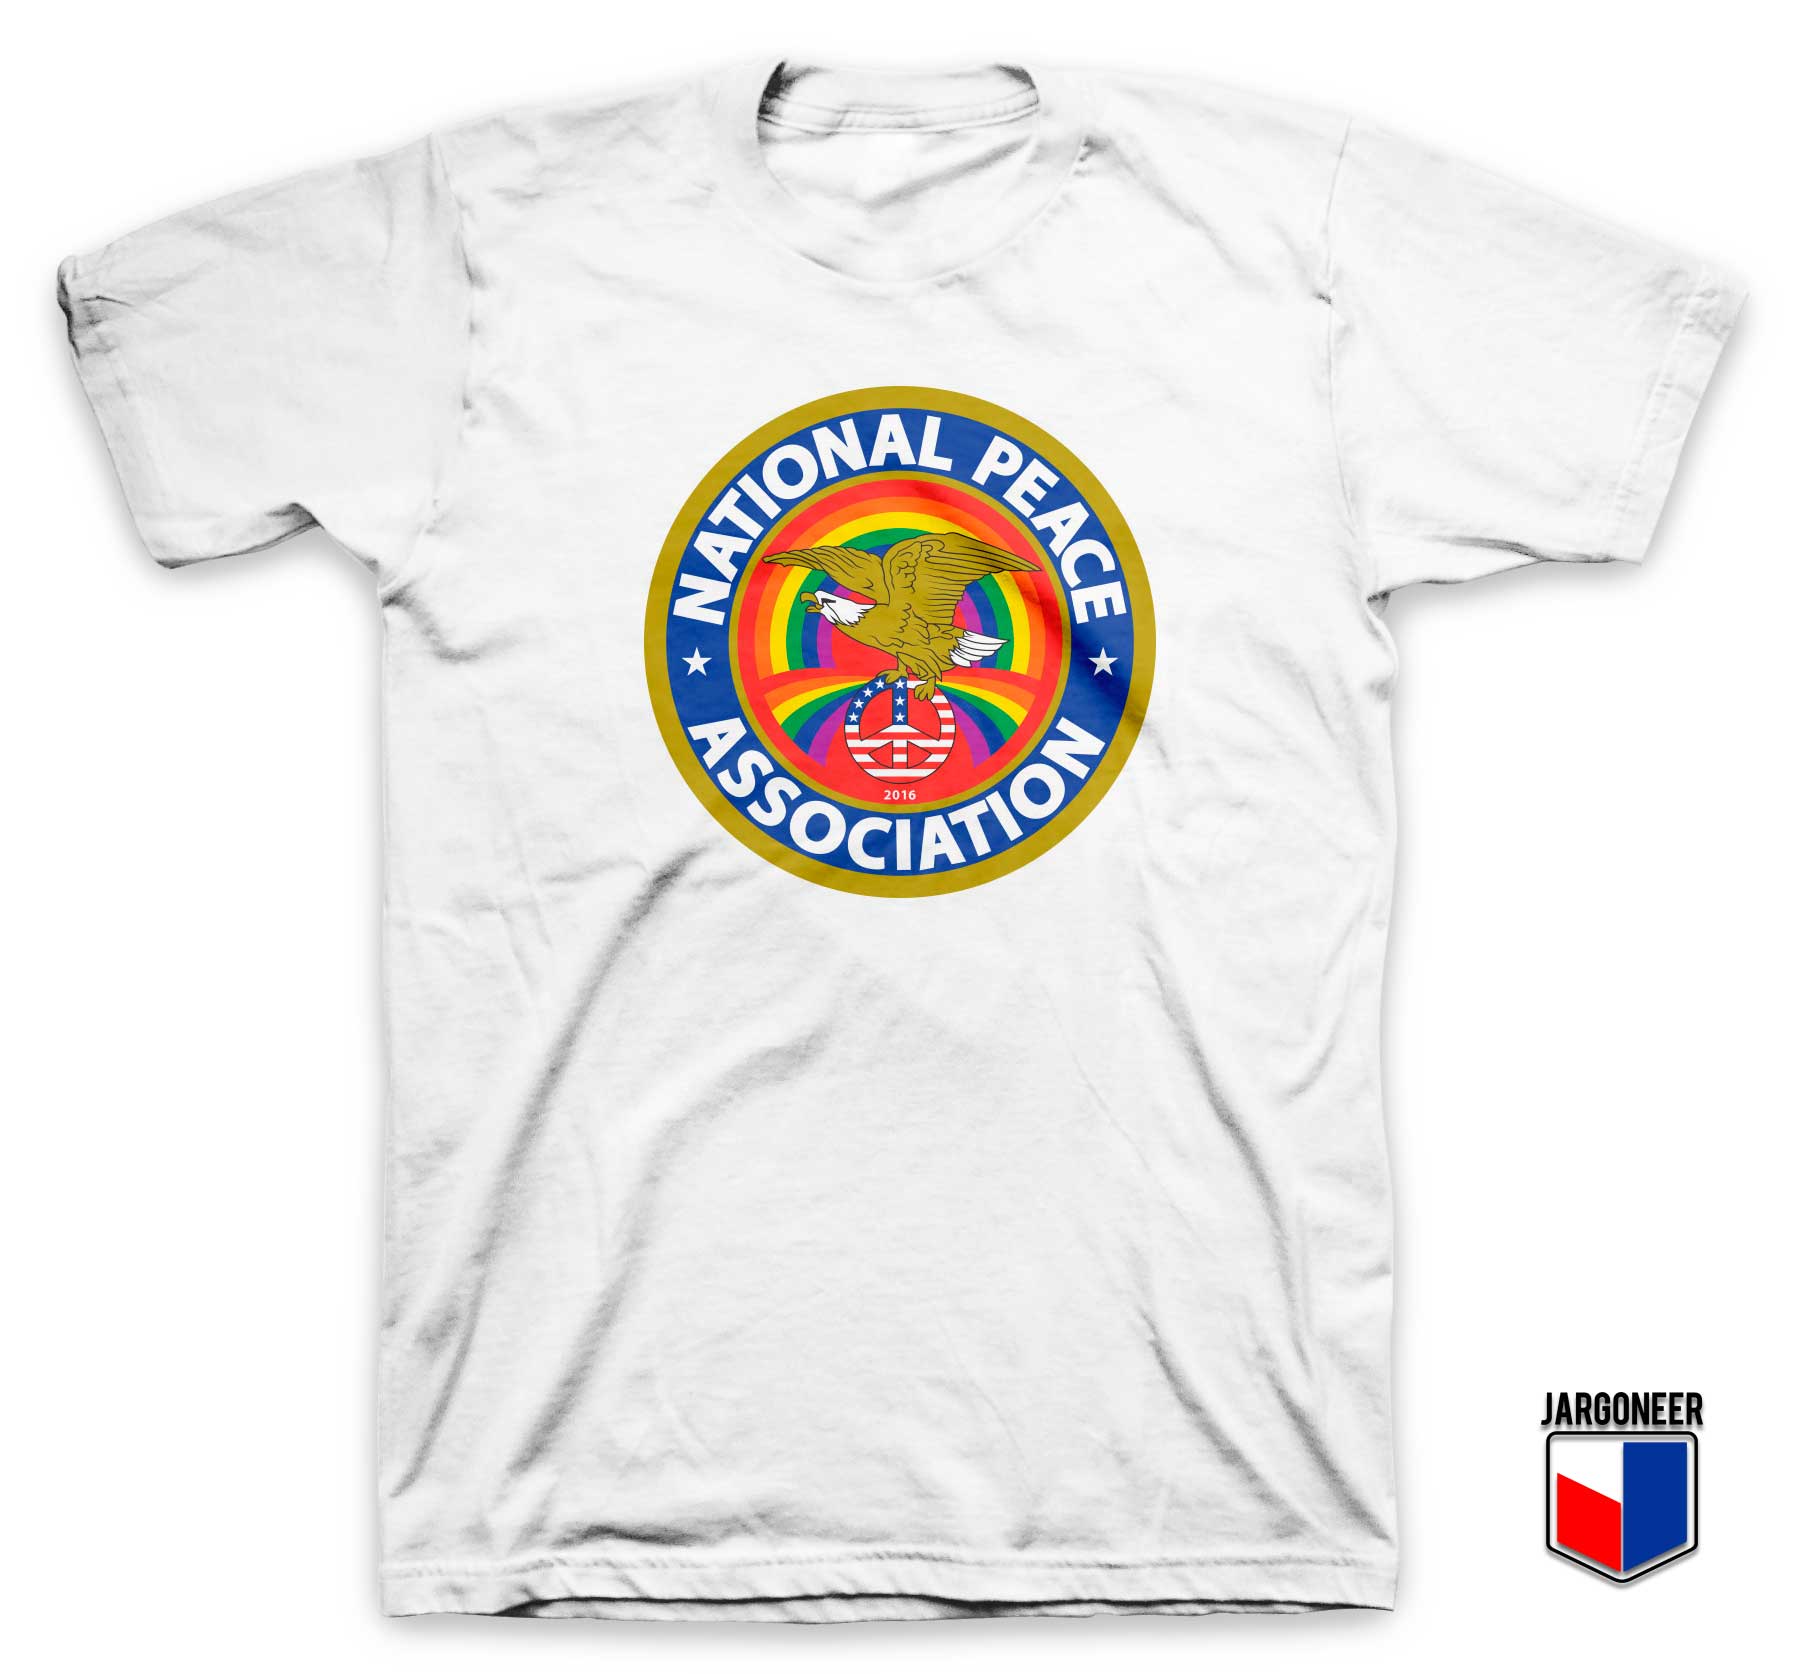 National Peace Association T Shirt - Shop Unique Graphic Cool Shirt Designs